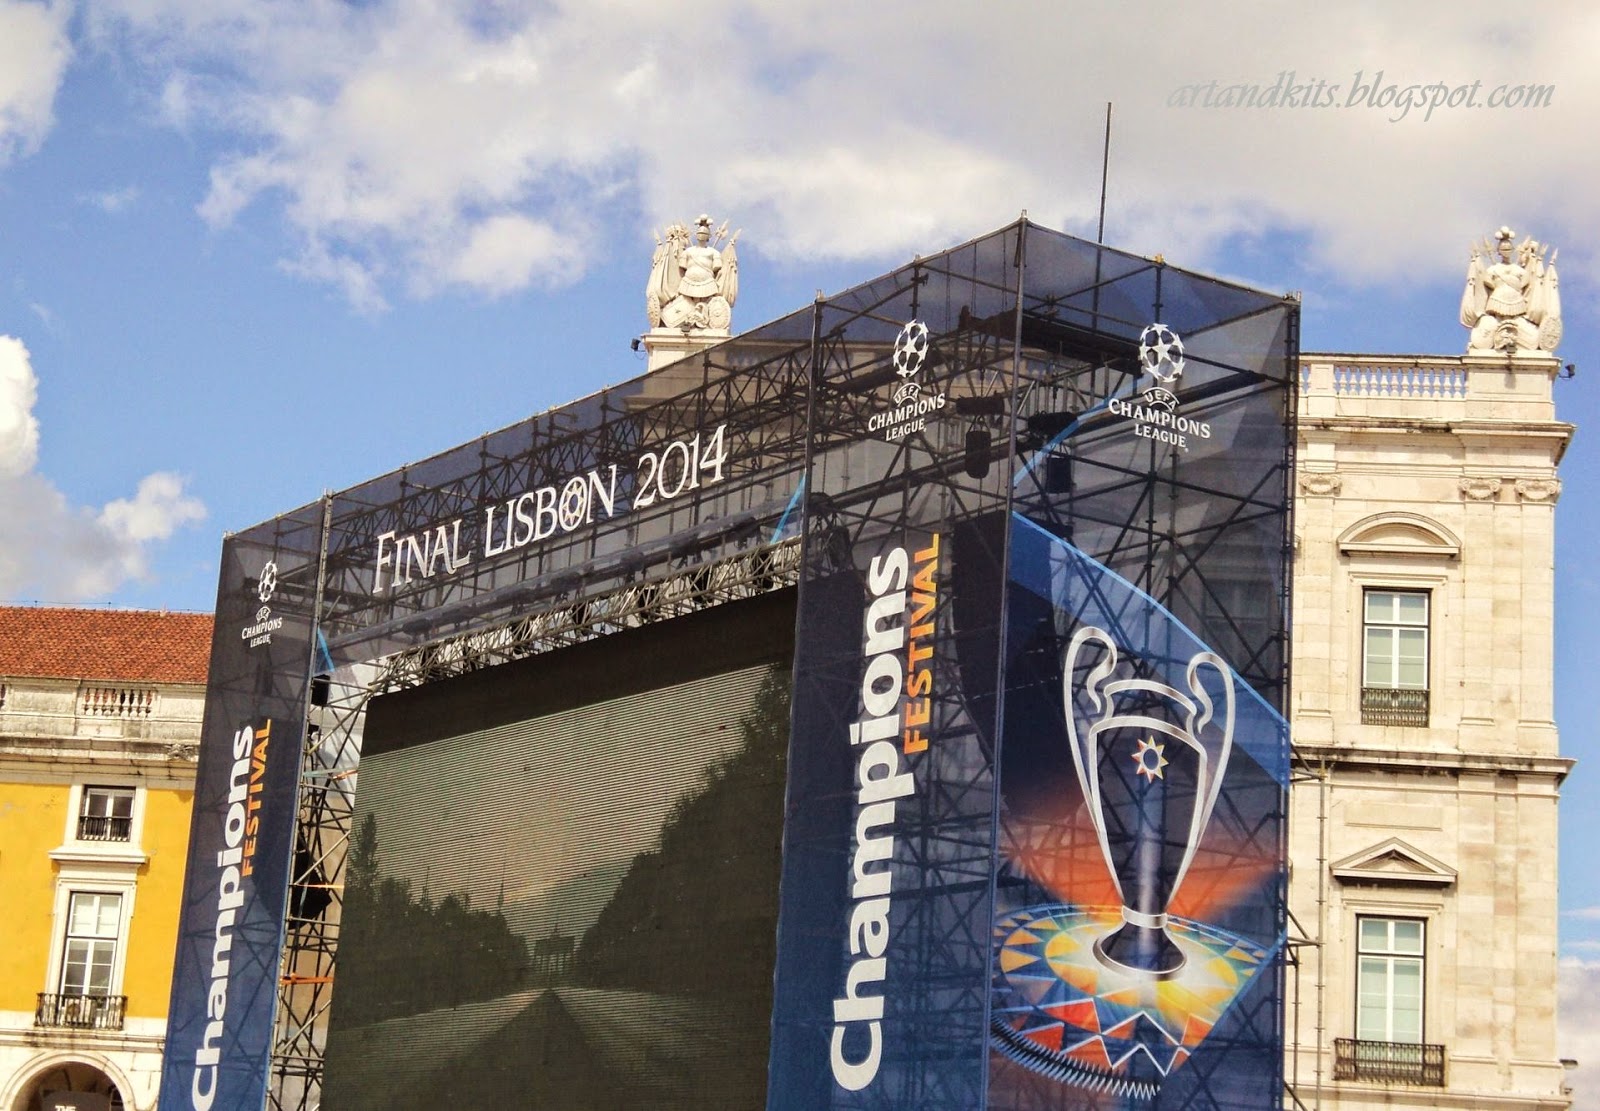 Imagens de ontem, no Terreiro do Paço... para acontecimentos de amanhã, no Estádio da Luz. / Yesterday's images, at the Commerce Square... for tomorrow's events, at the Stadium of the Light.